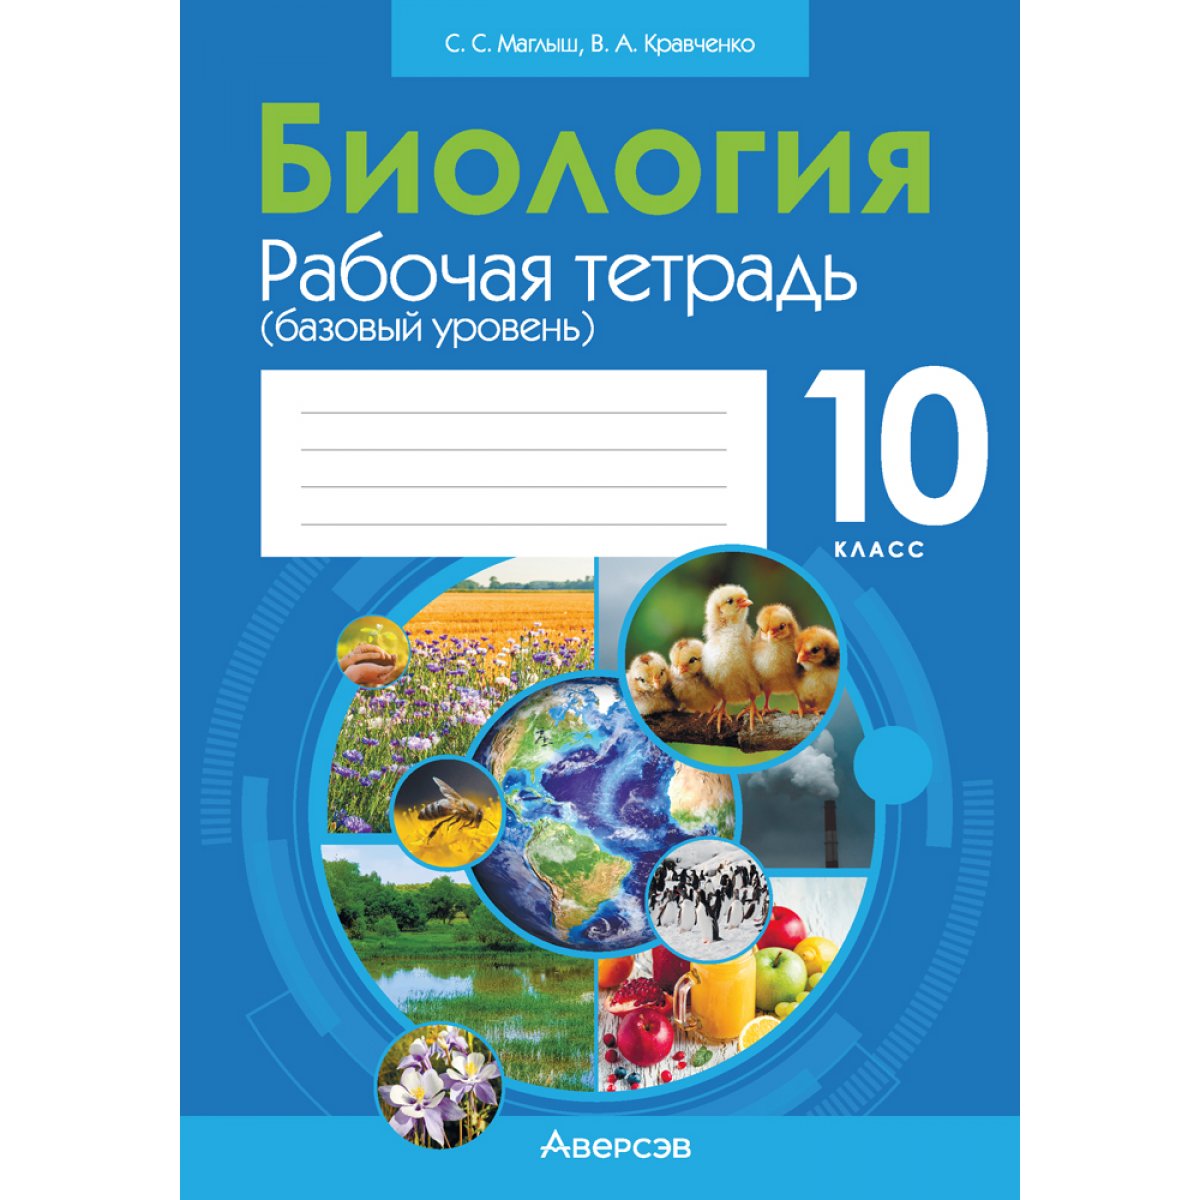 Учебник География Беларуси 10 класс Брилевский Смоляков - читать онлайн